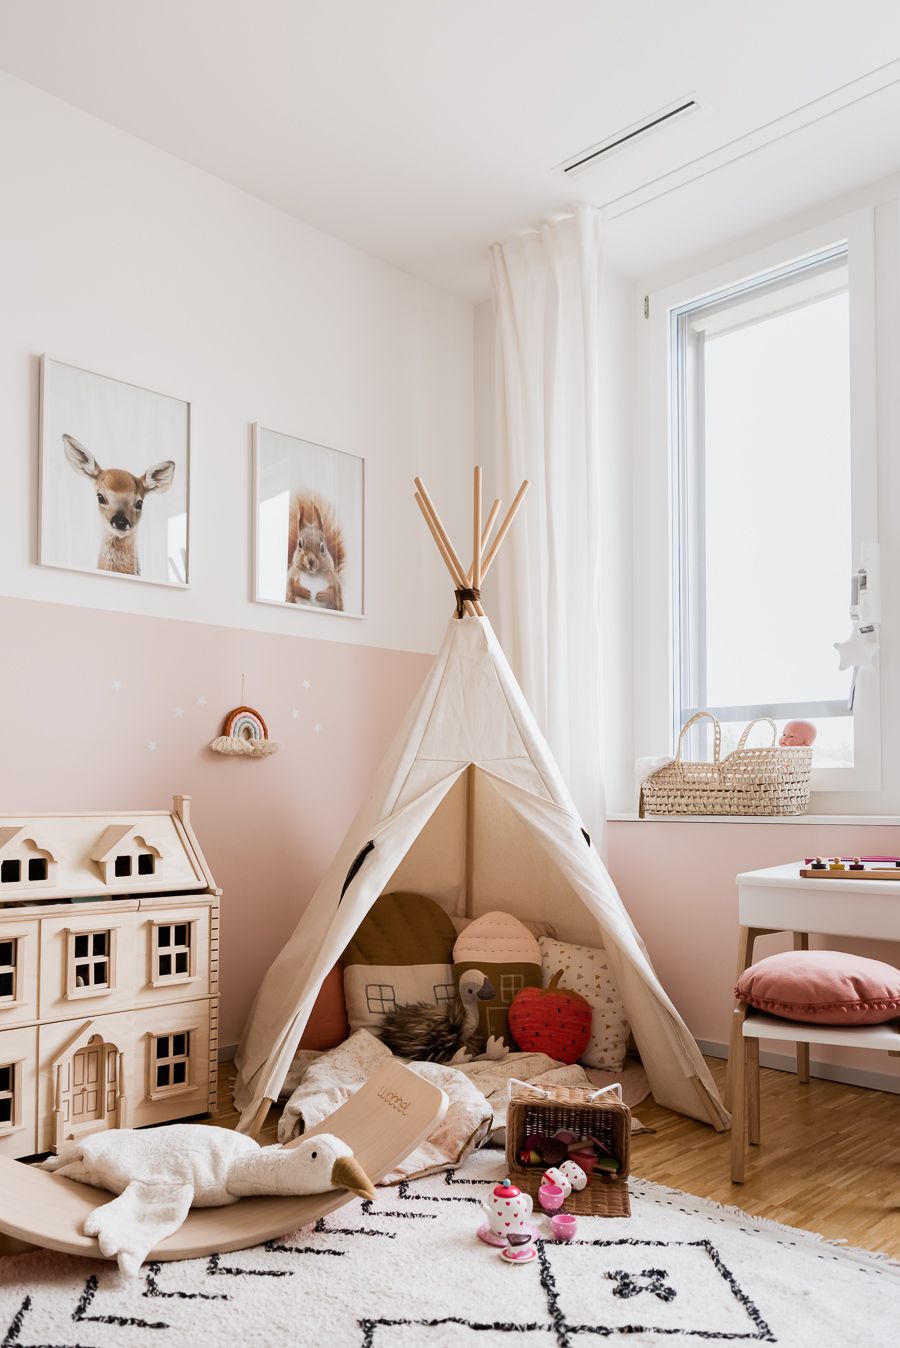 Biblia gorra caravana Esta es la habitación infantil más encantadora de Instagram